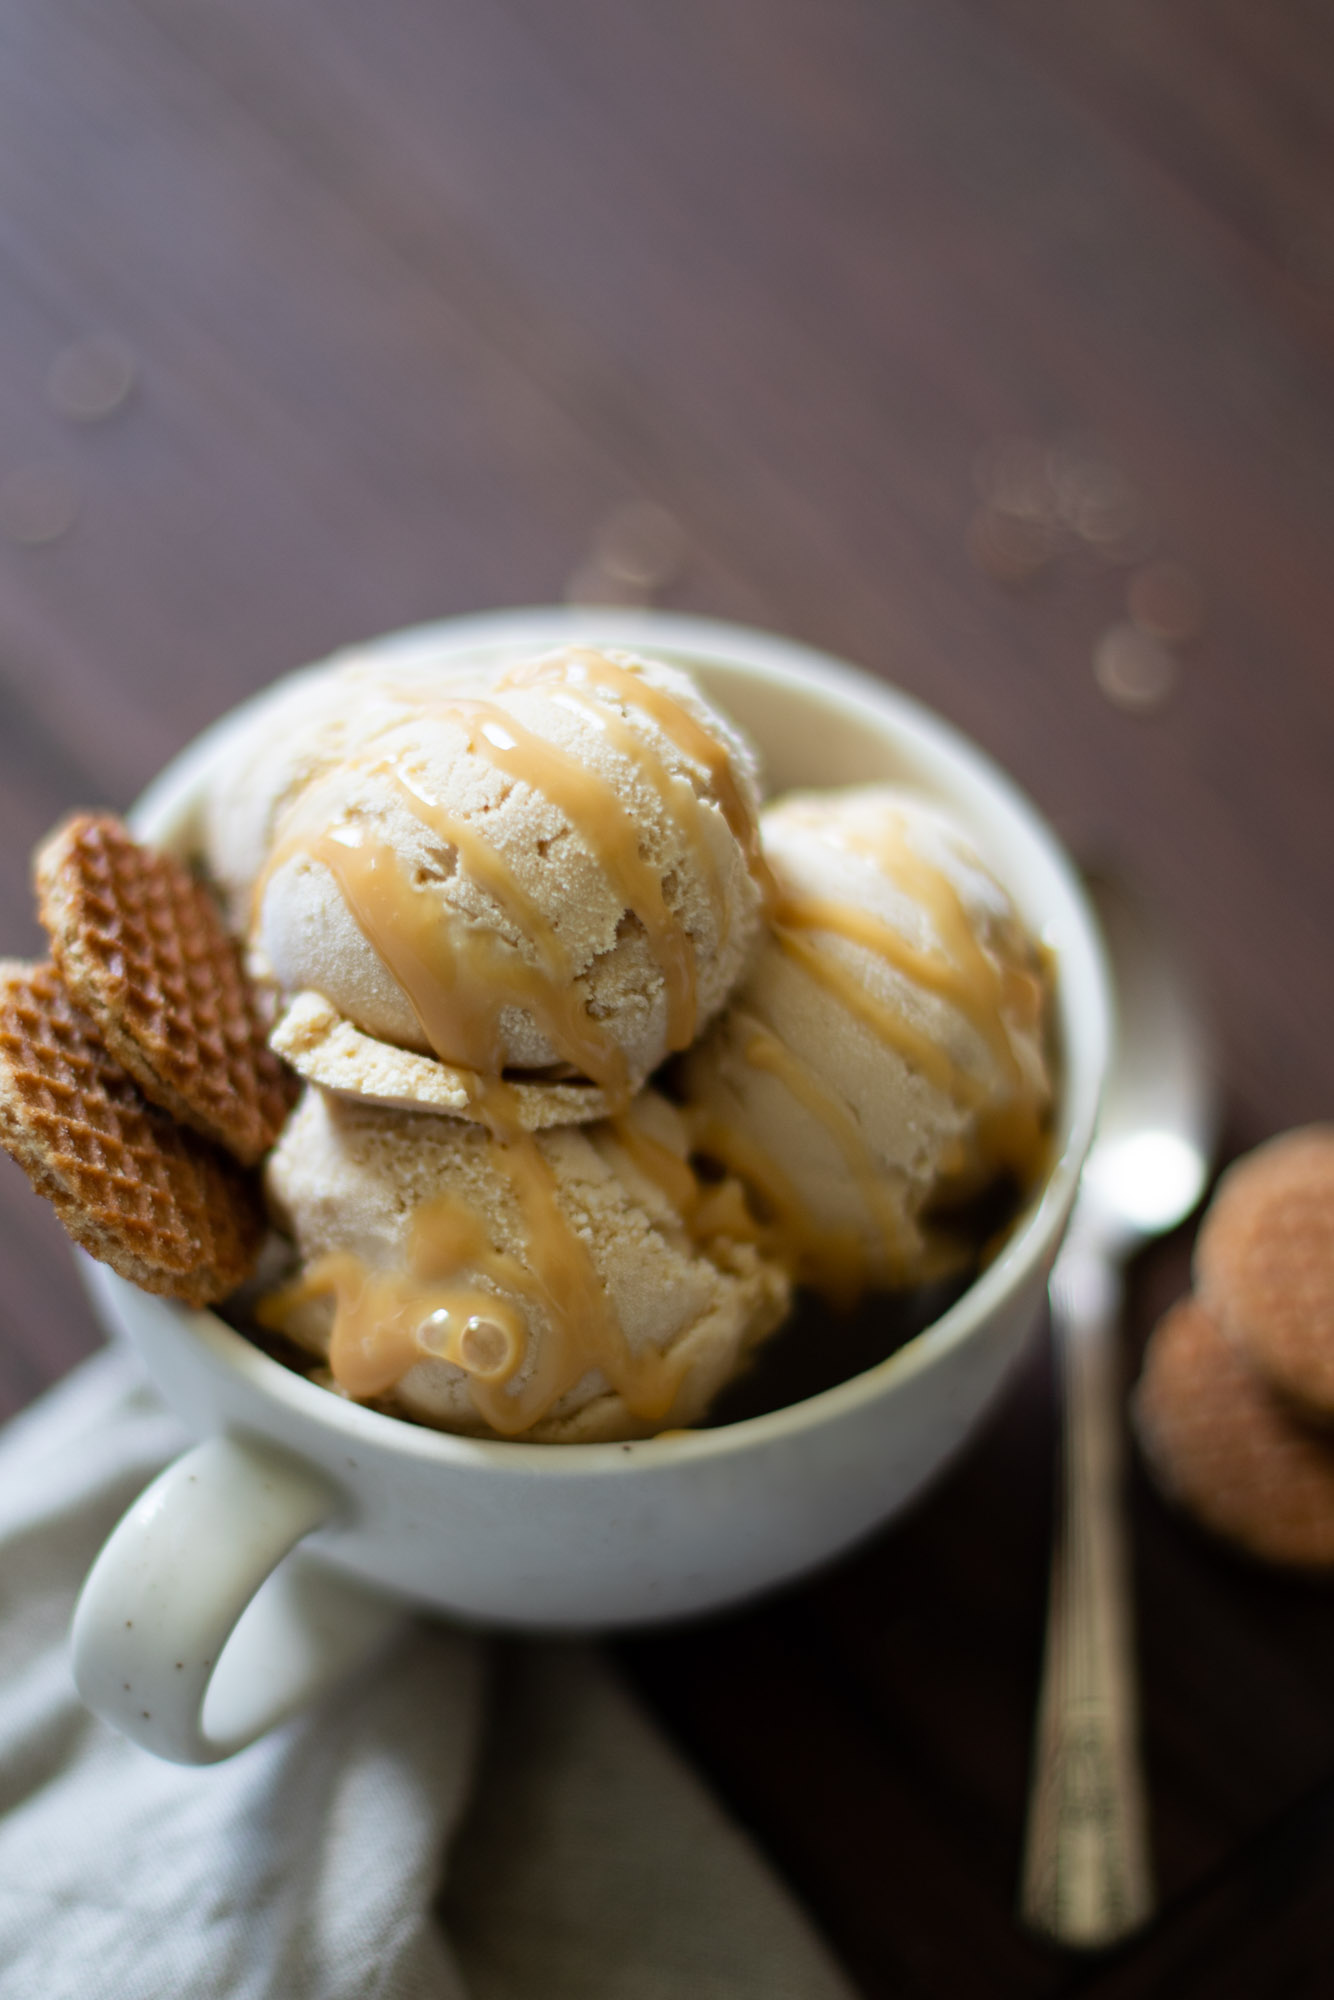 Kitchenaid Vanilla Ice Cream Maker Recipe! {Super Easy and Delicious}